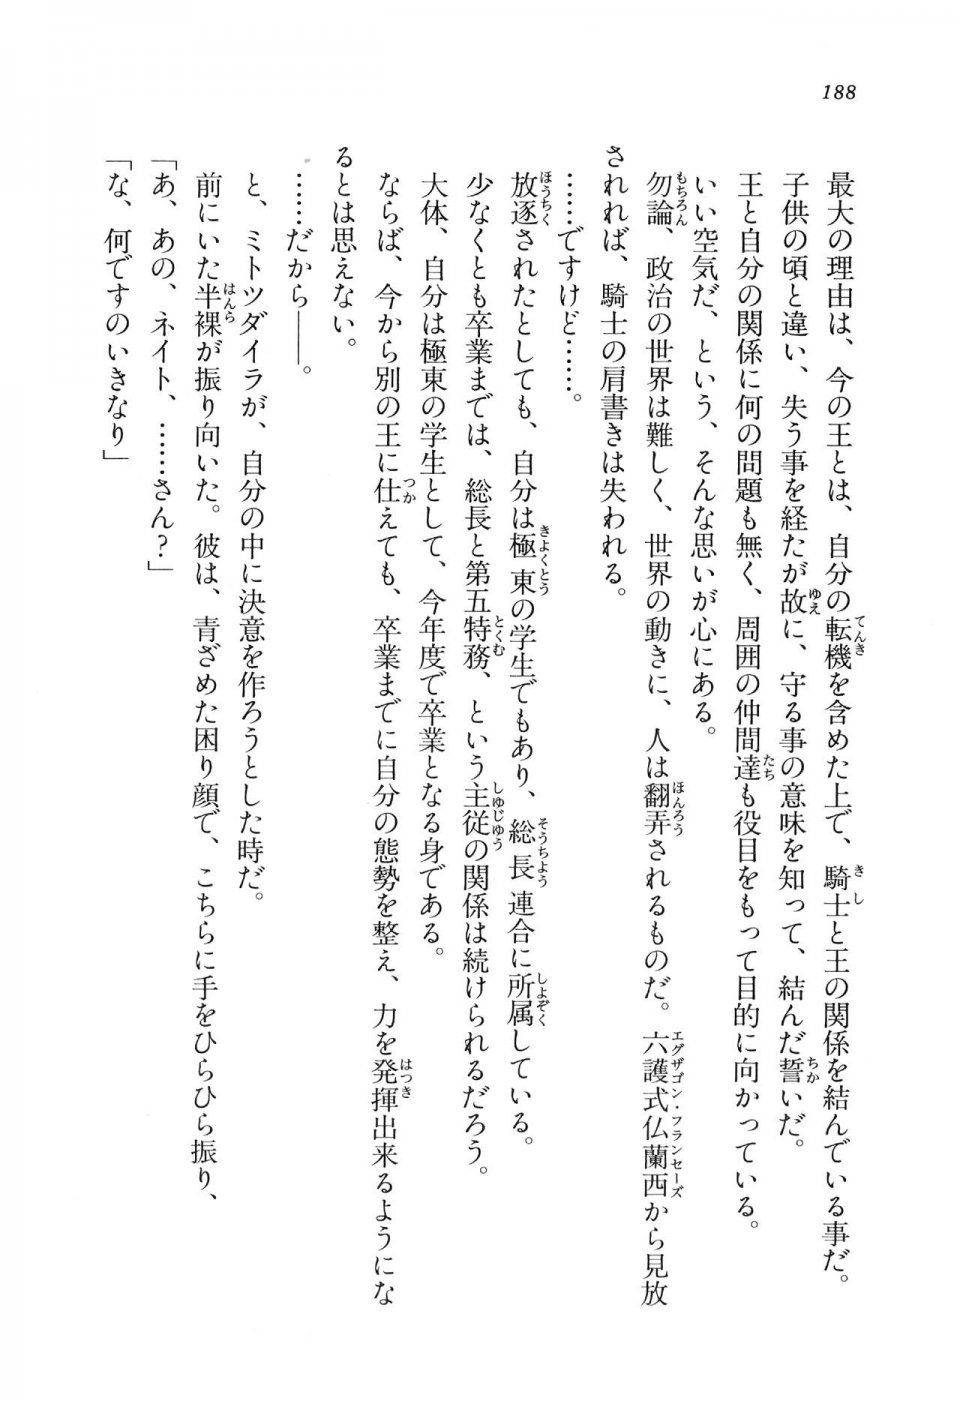 Kyoukai Senjou no Horizon LN Vol 11(5A) - Photo #188